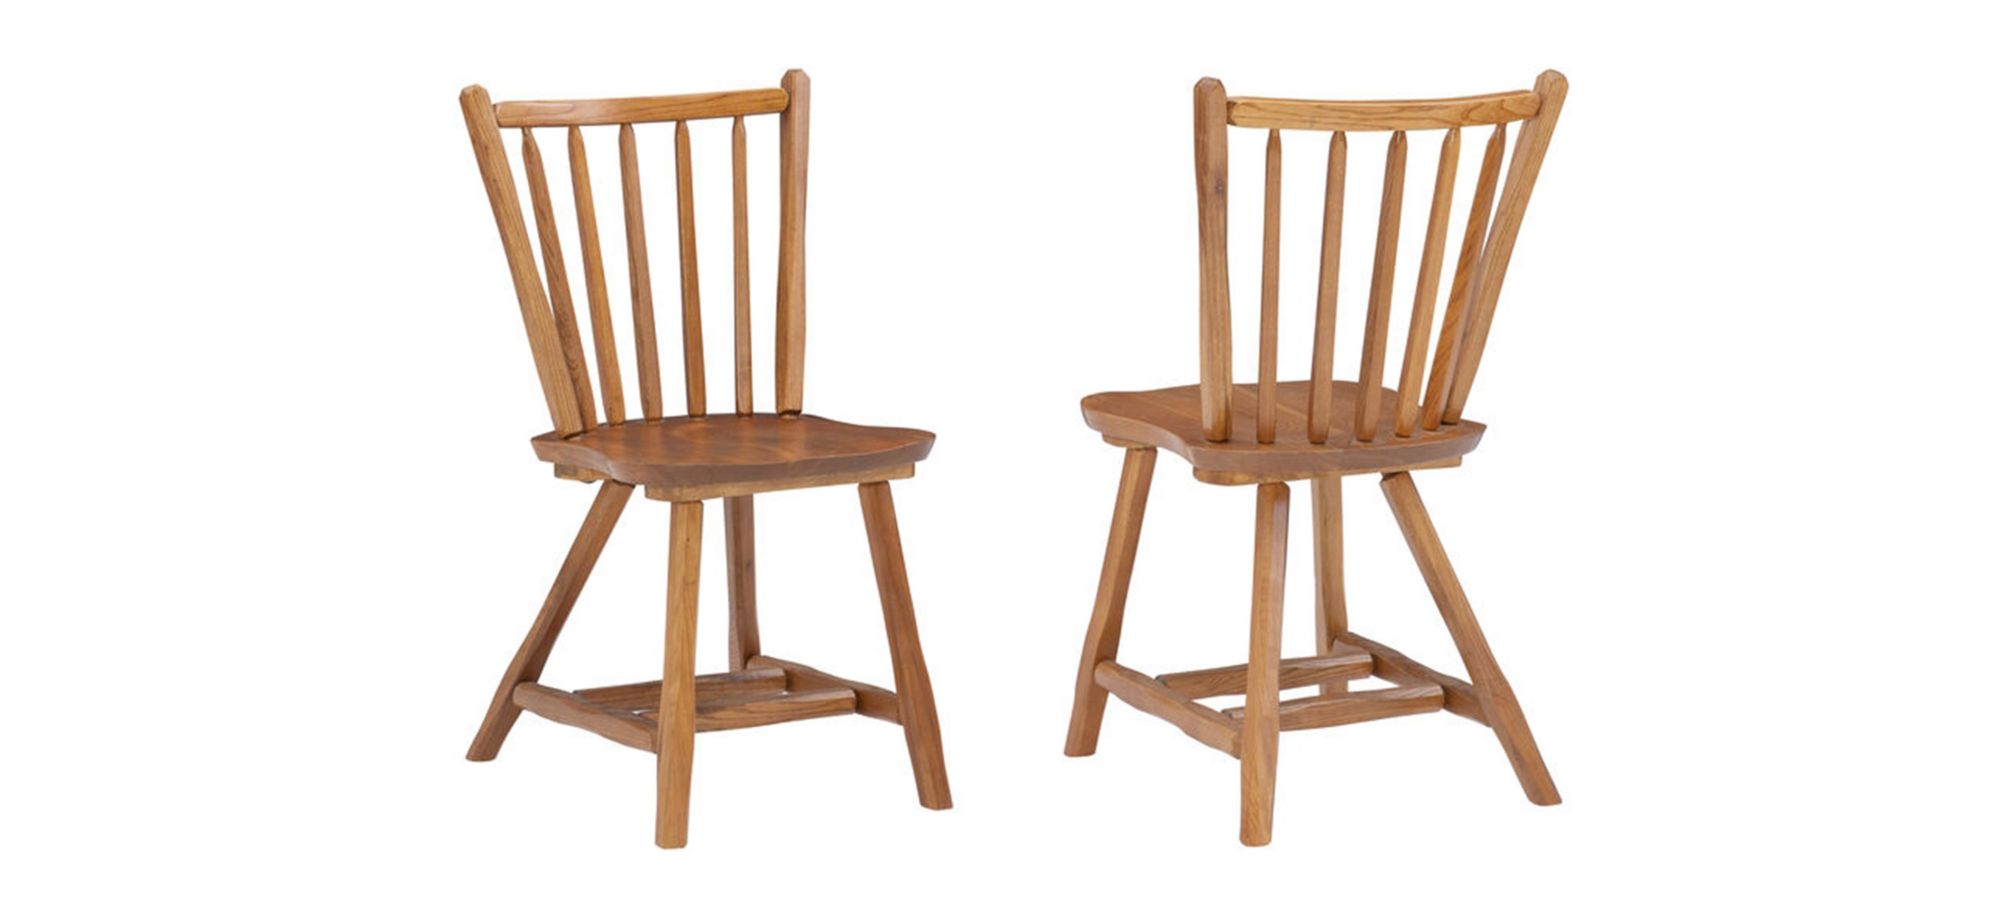 Bazel Side Chair - Set of 2 in Oak by Linon Home Decor